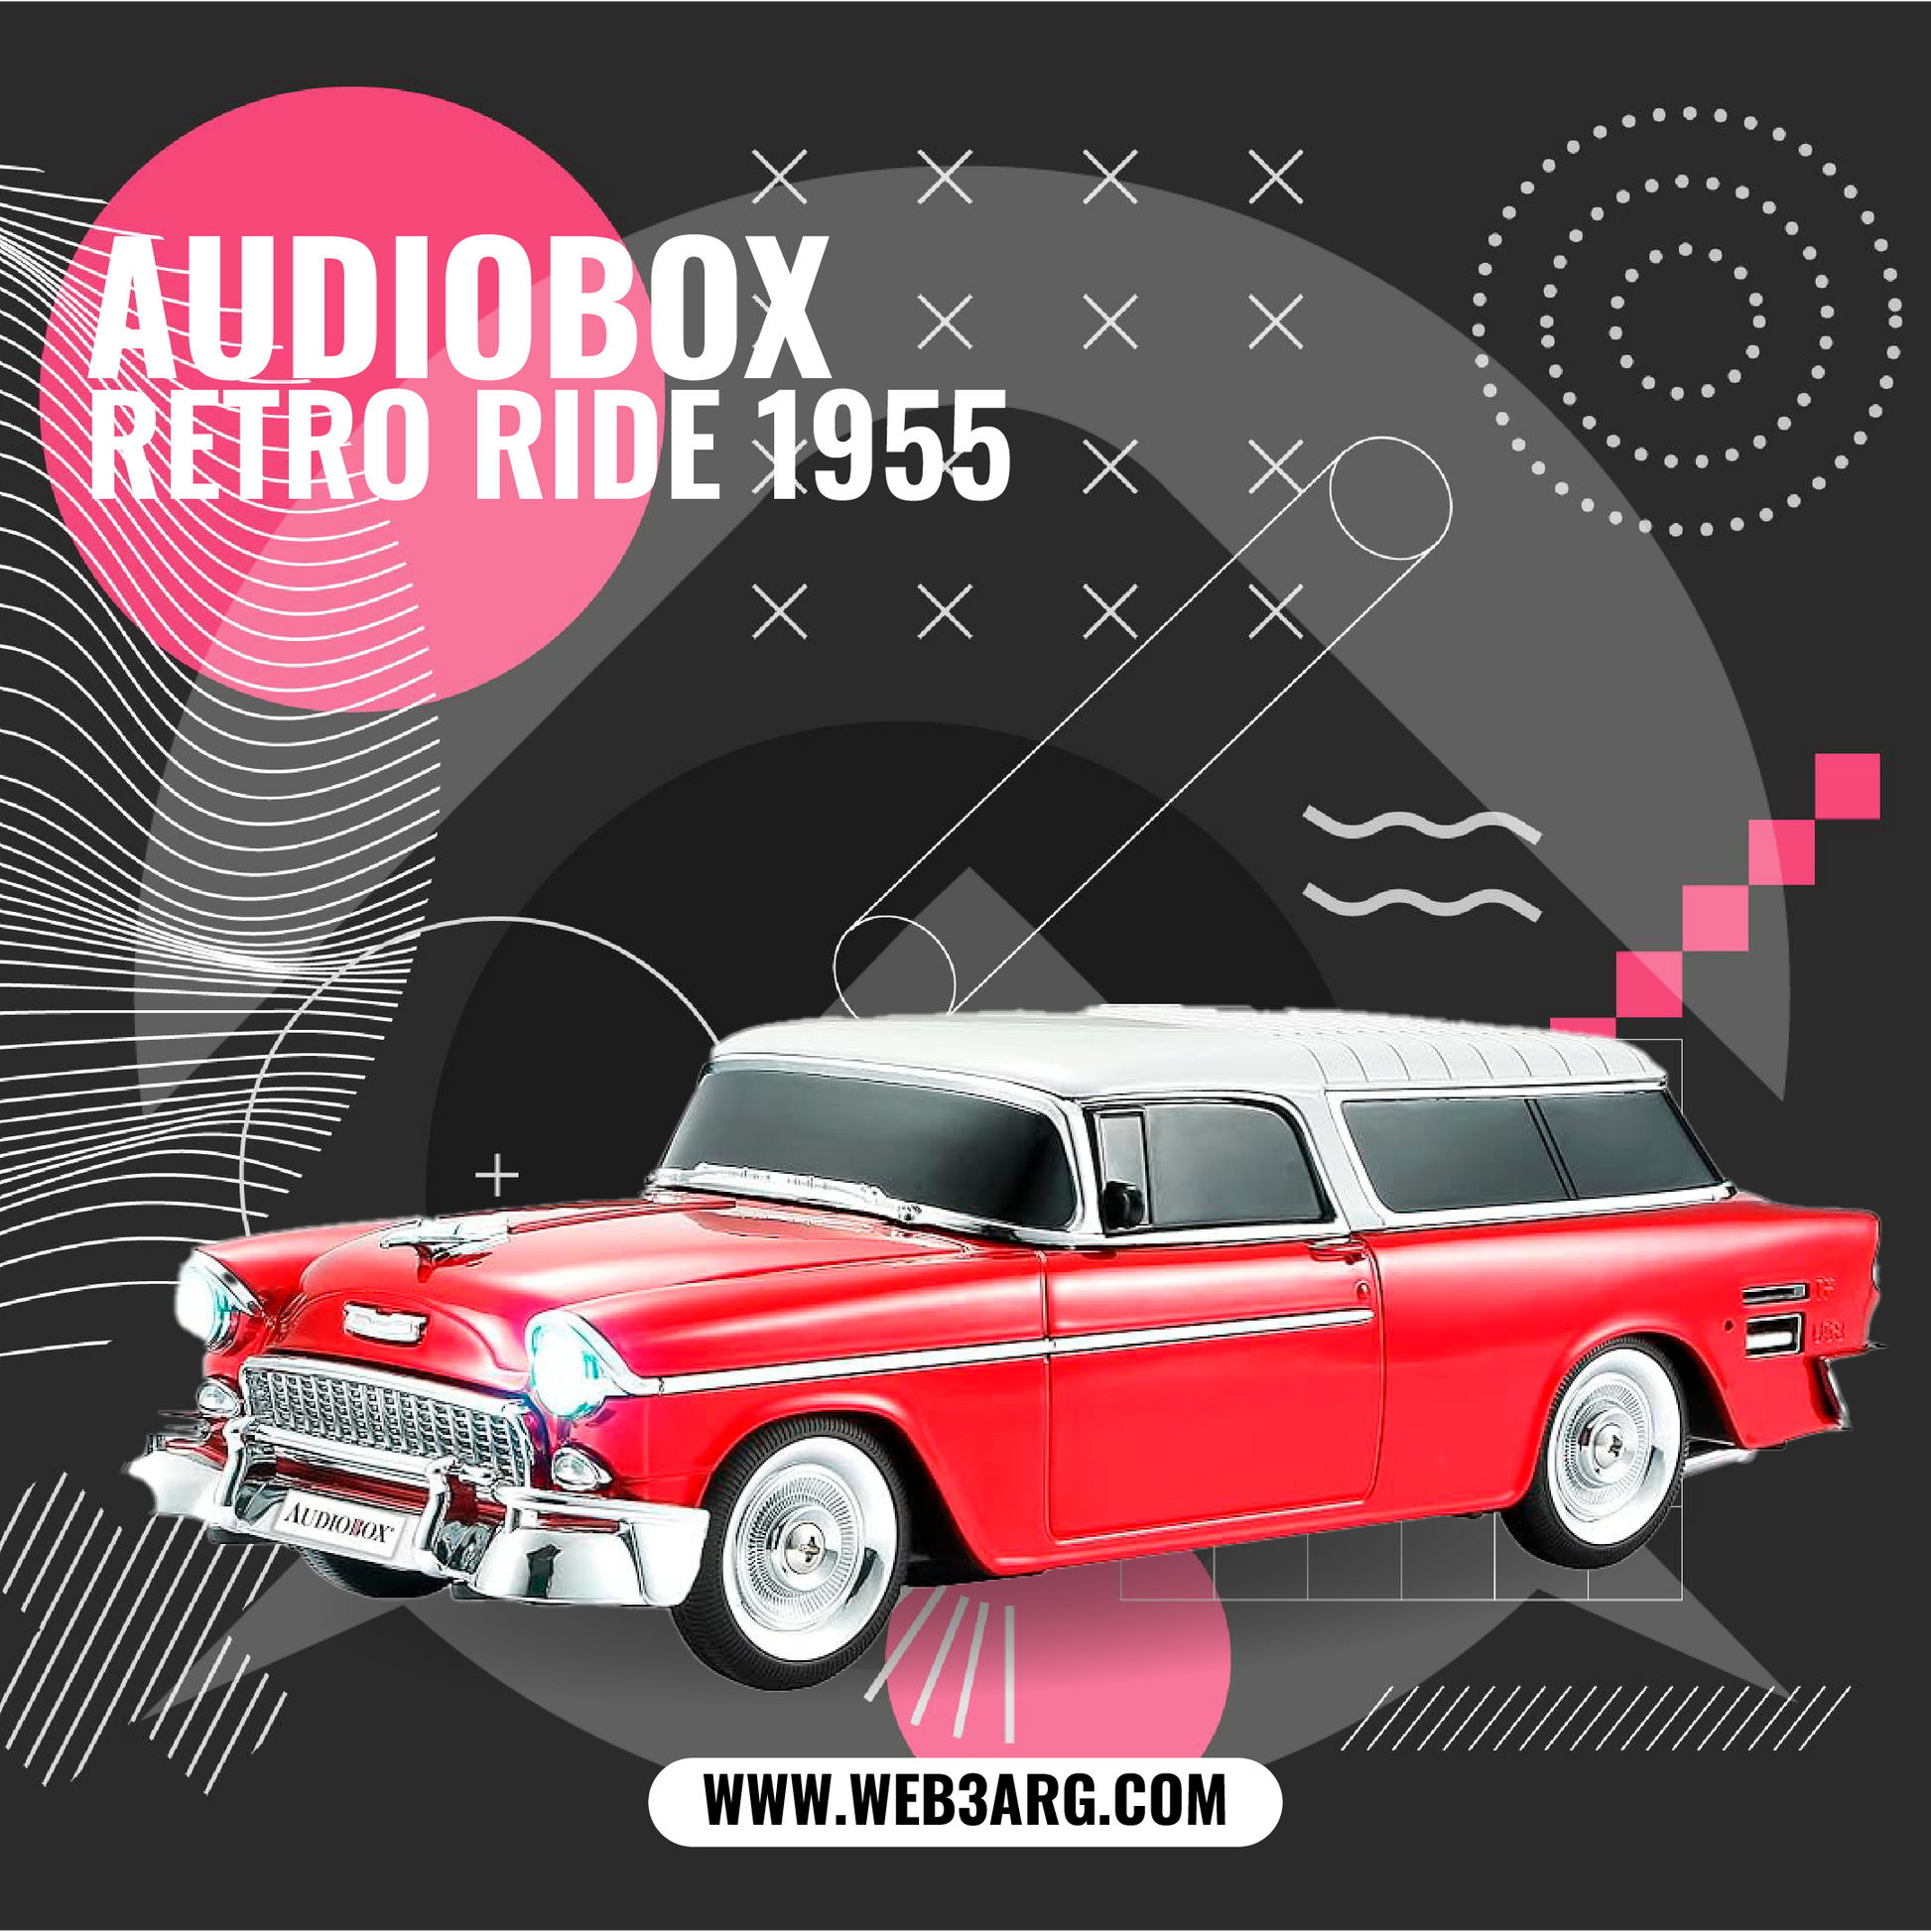 PARLANTE AUDIOBOX RETRO RIDE 1955 - Premium Parlante de Audiobox - Solo $77062.50! Compra ahora Web3Arg